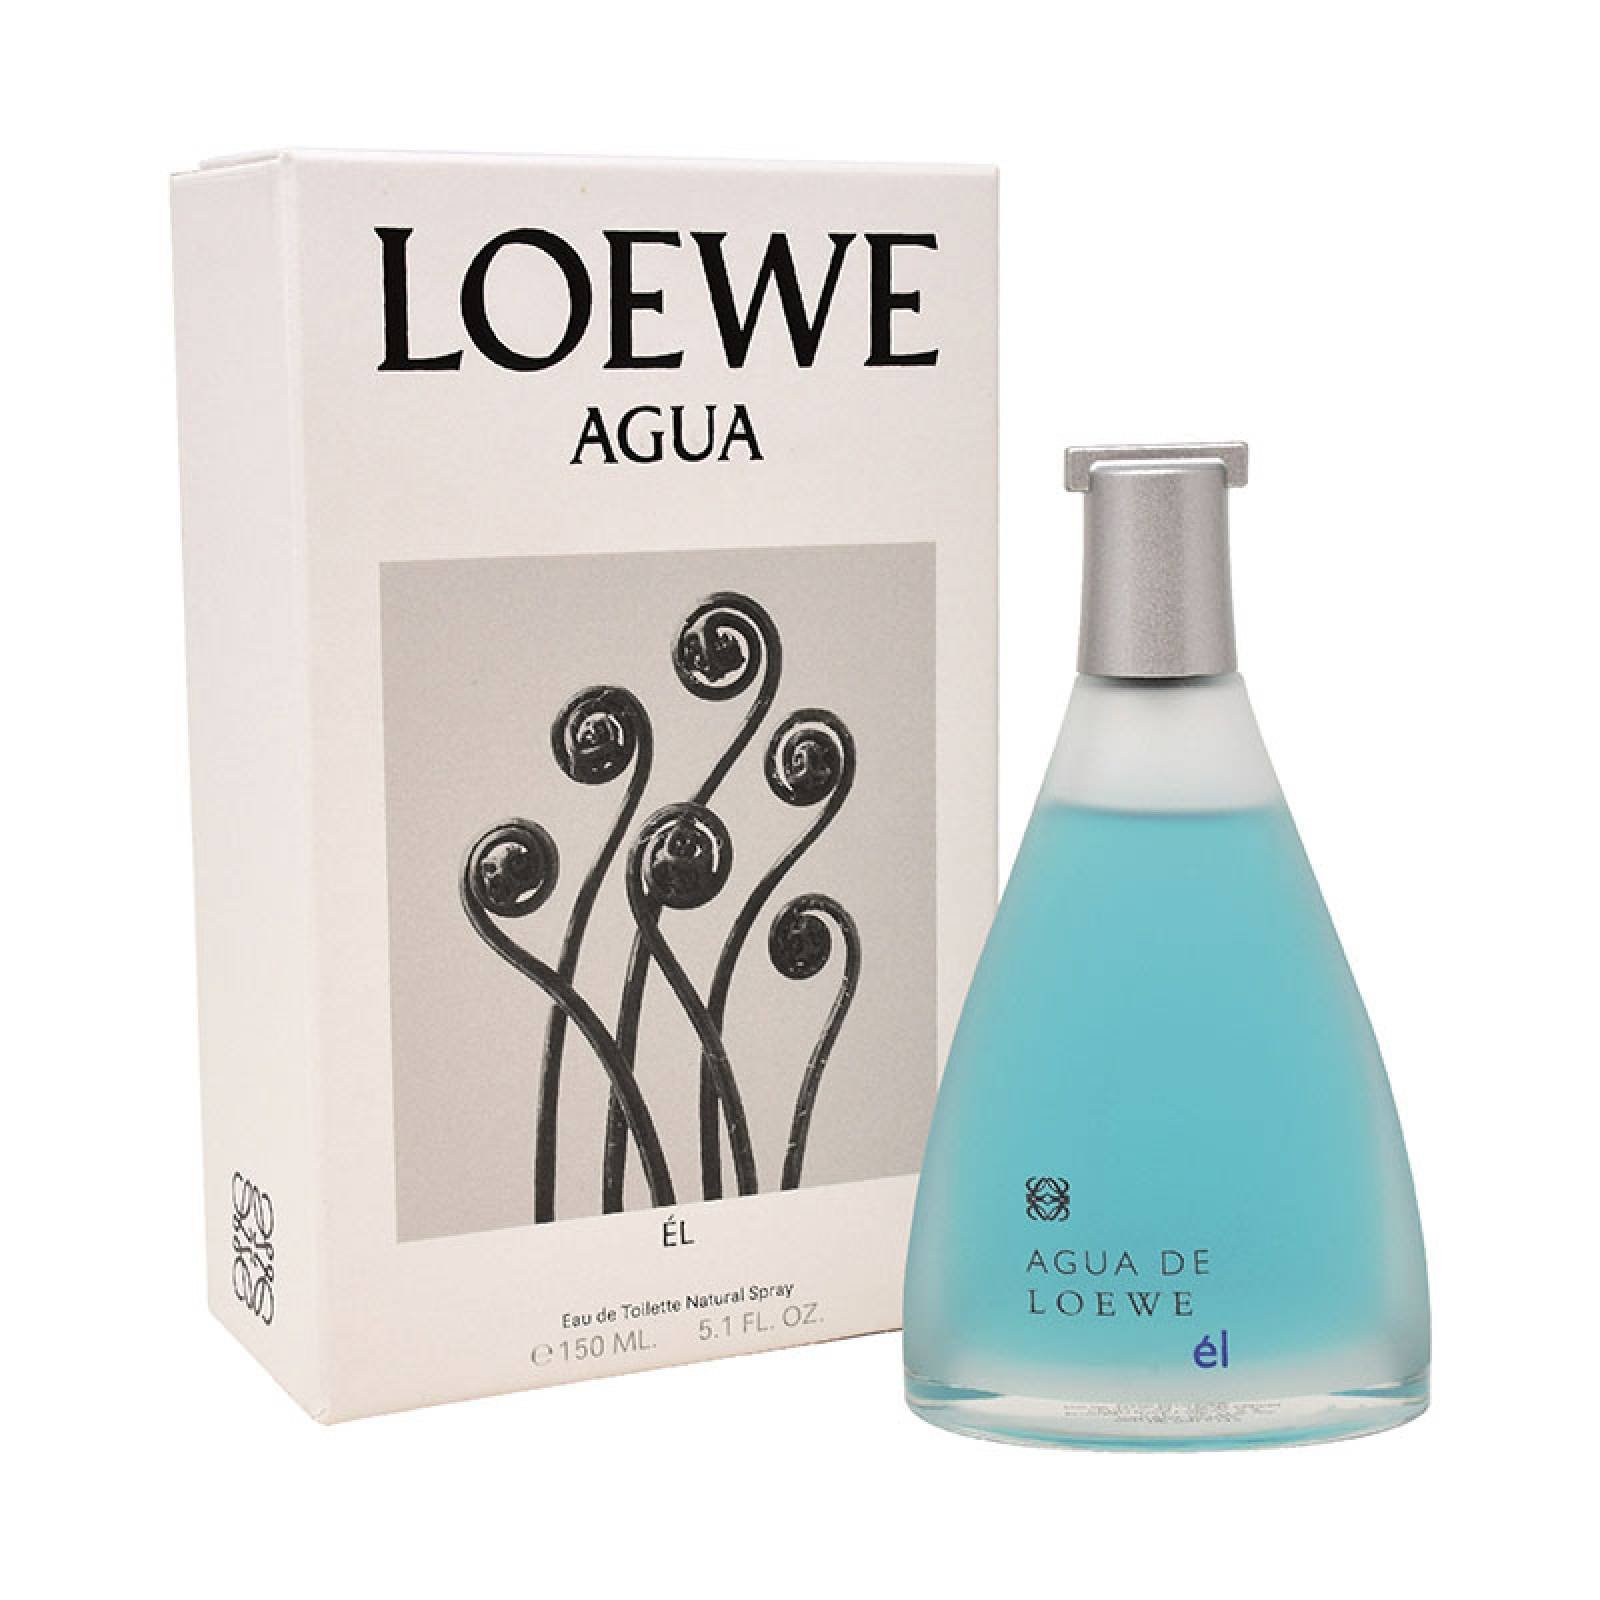 Agua De Loewe El 150 ml Edt Spray de Loewe